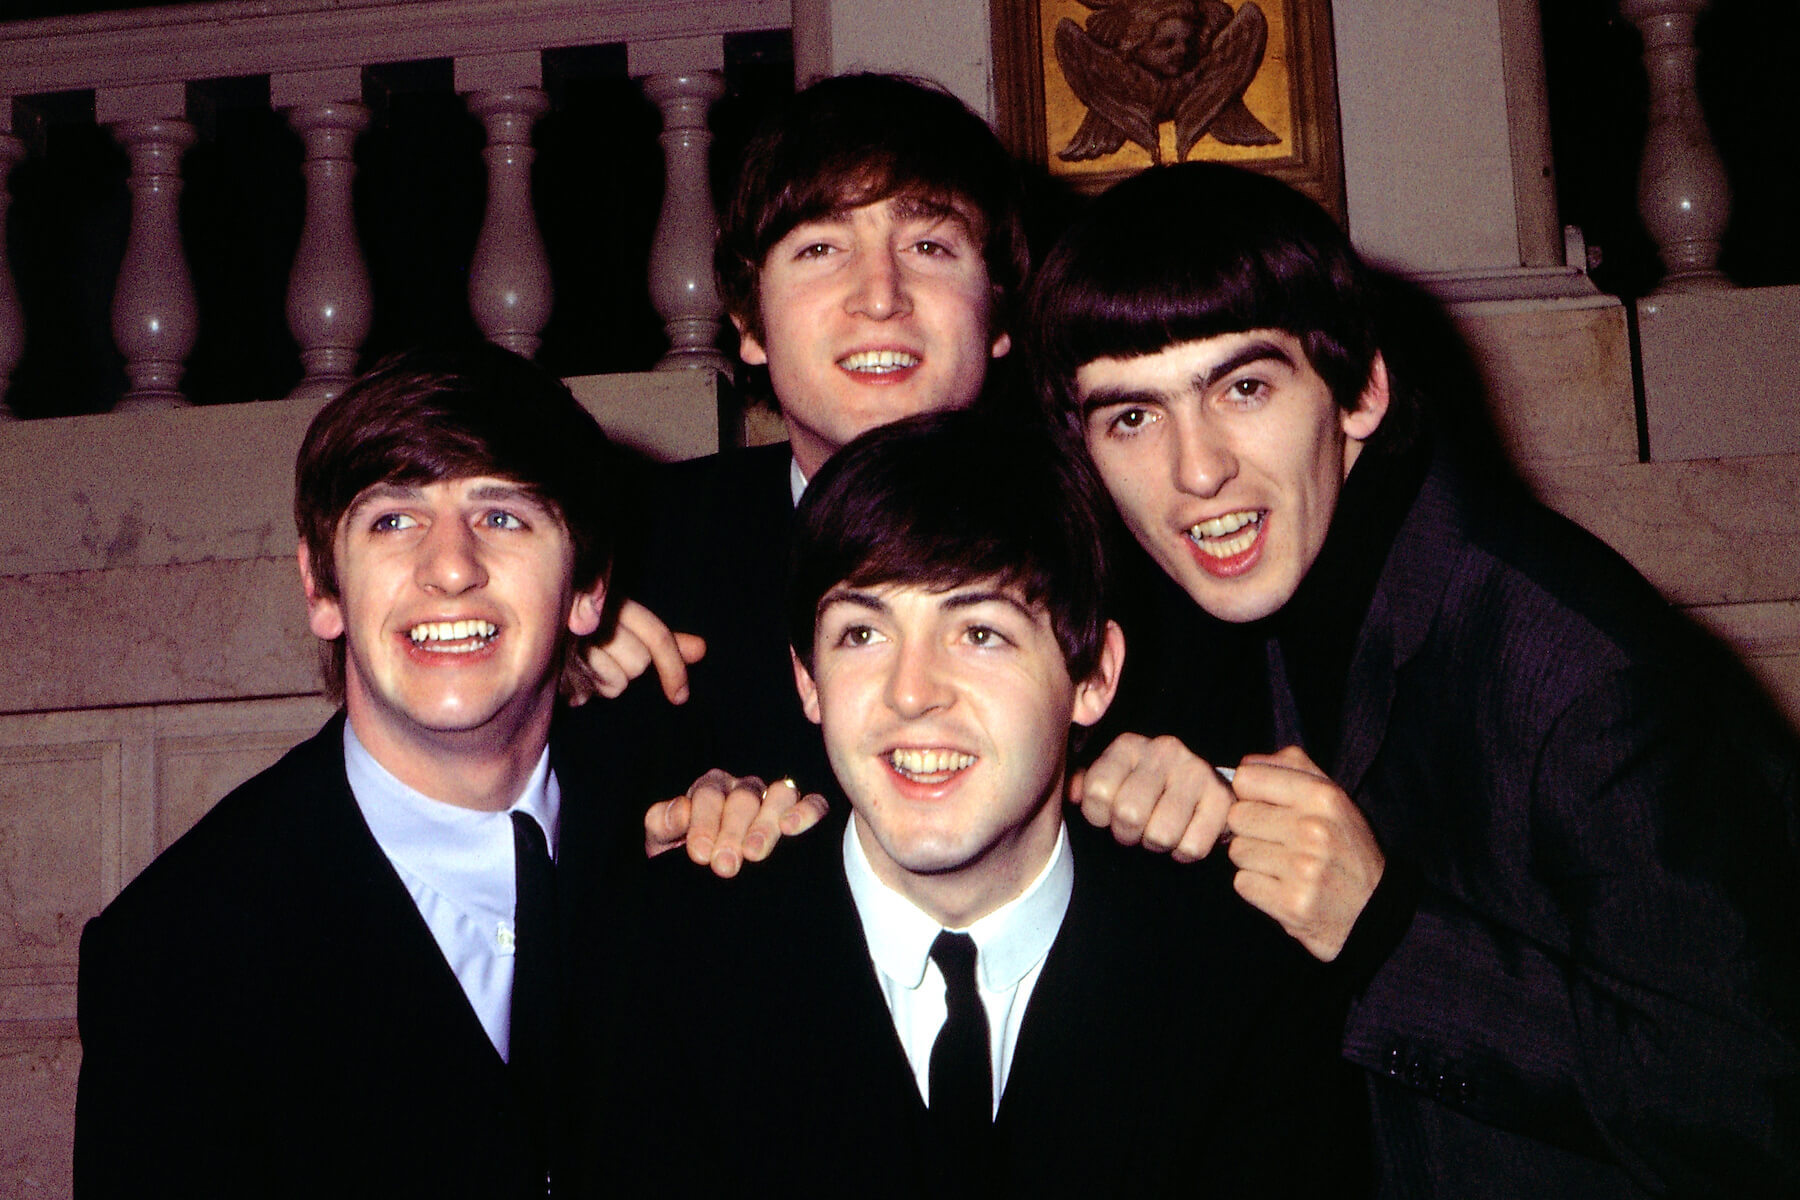 Ringo Starr, John Lennon, Paul McCartney, and George Harrison of The Beatles smiling